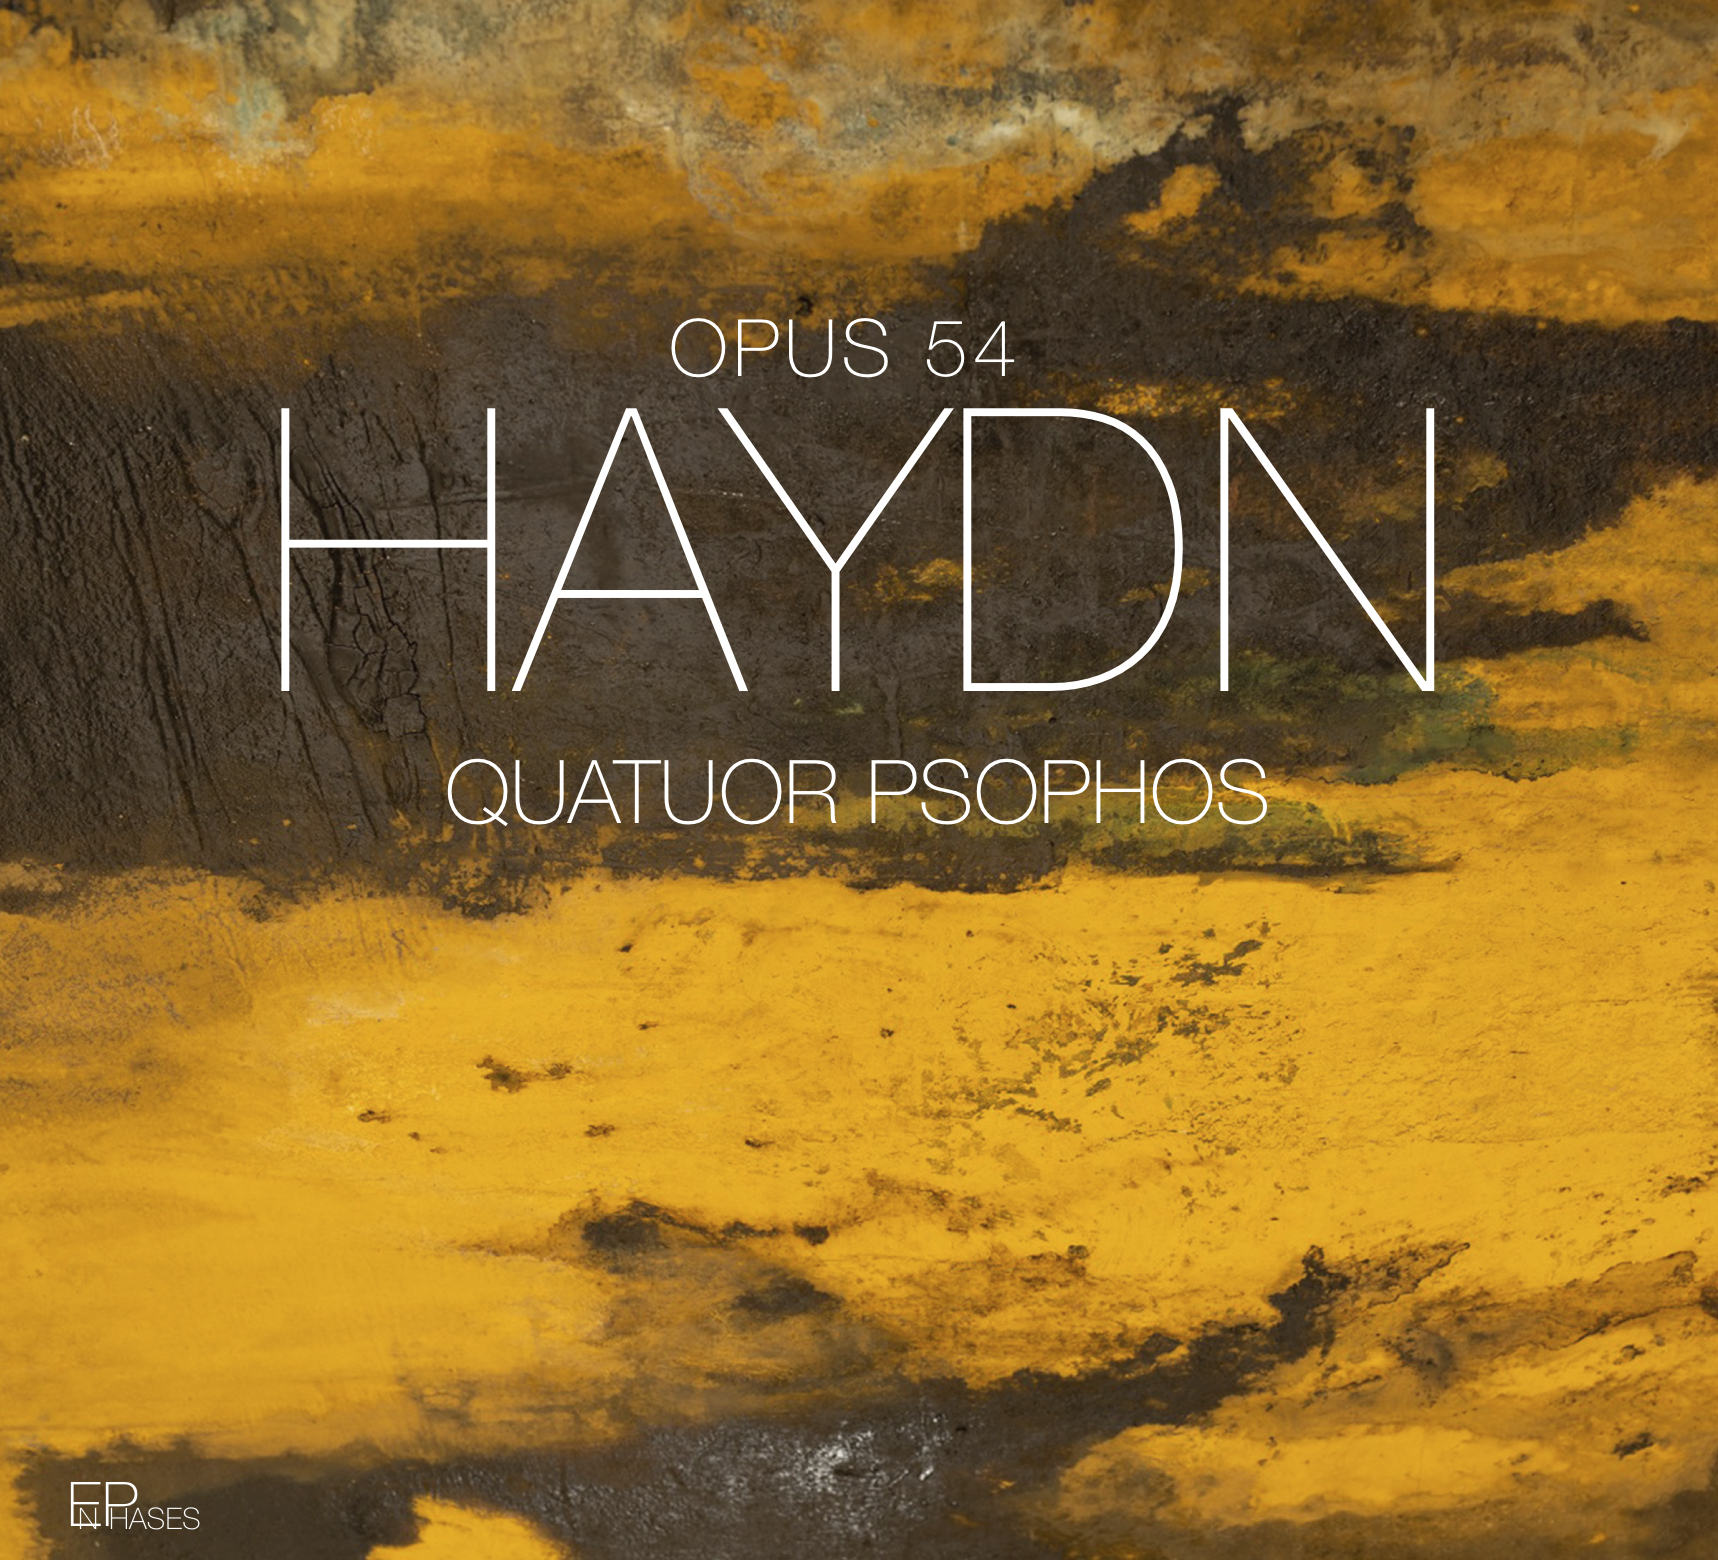 Quatuor Psophos Haydn